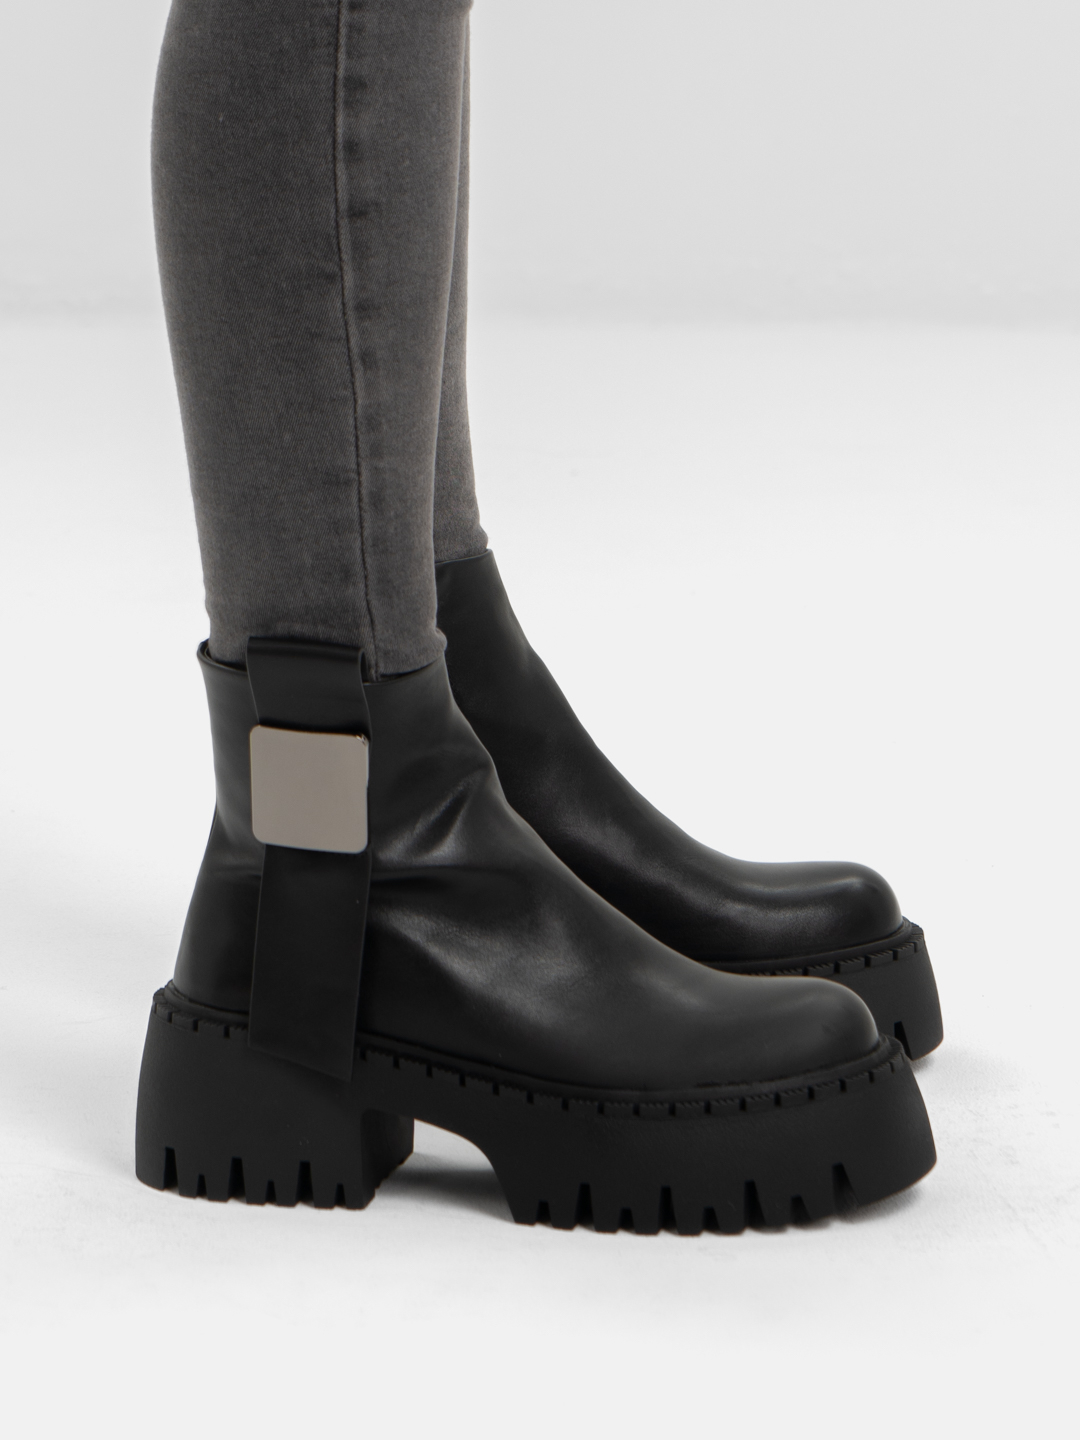 Женские ботинки на высокой платформе, осенние купить по цене 2143.62 ₽ винтернет-магазине KazanExpress